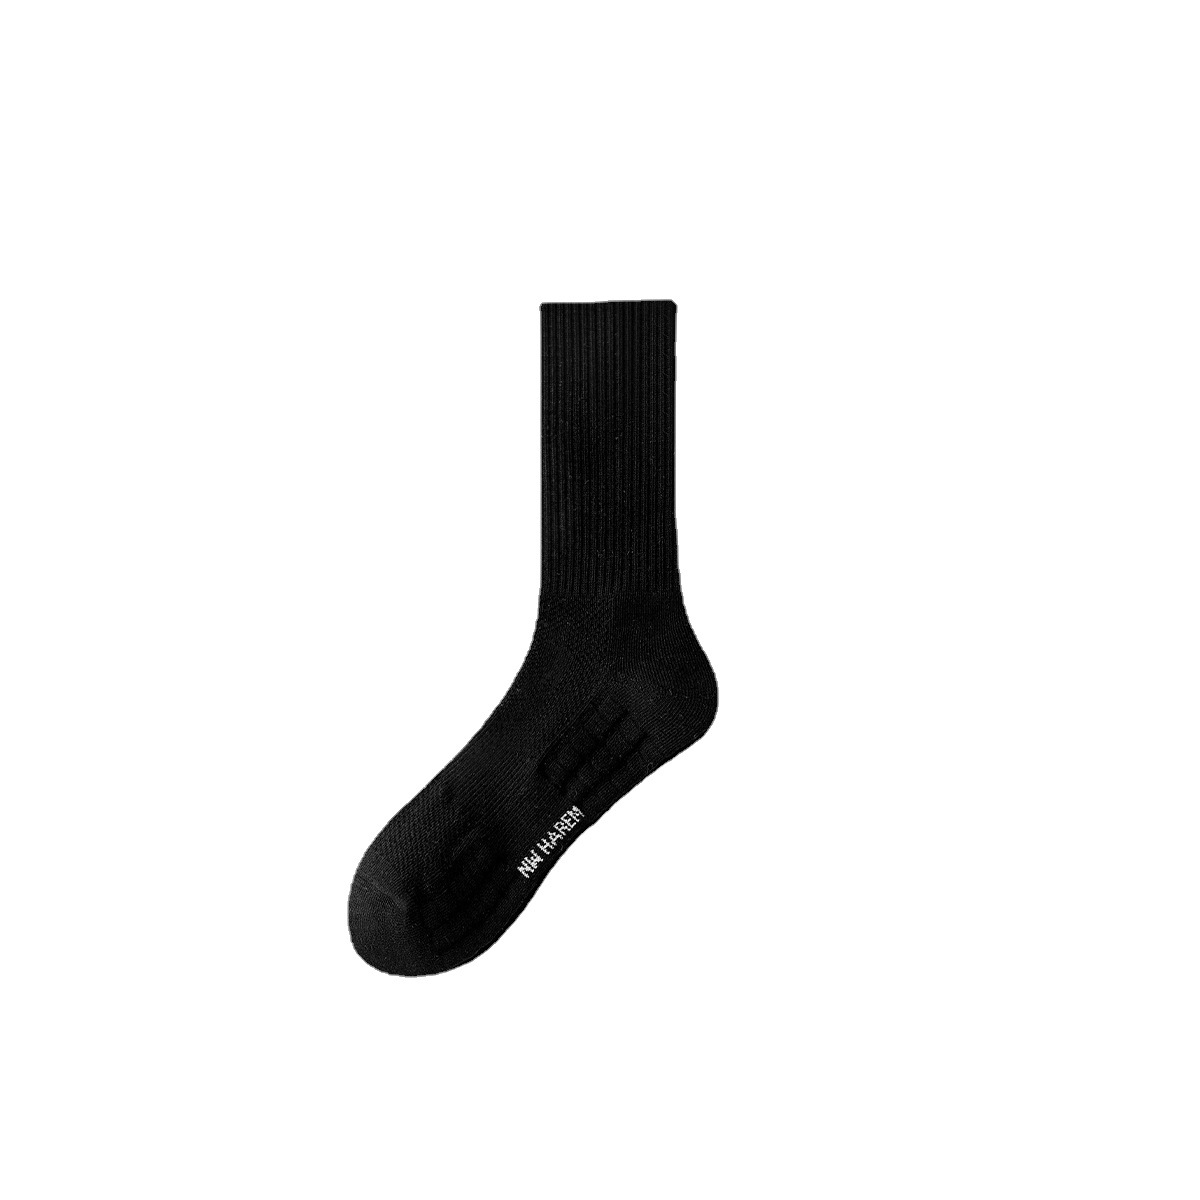 袜子男士中筒袜专业运动跑步篮球毛巾底吸汗透气网眼白色长袜批发详情图5